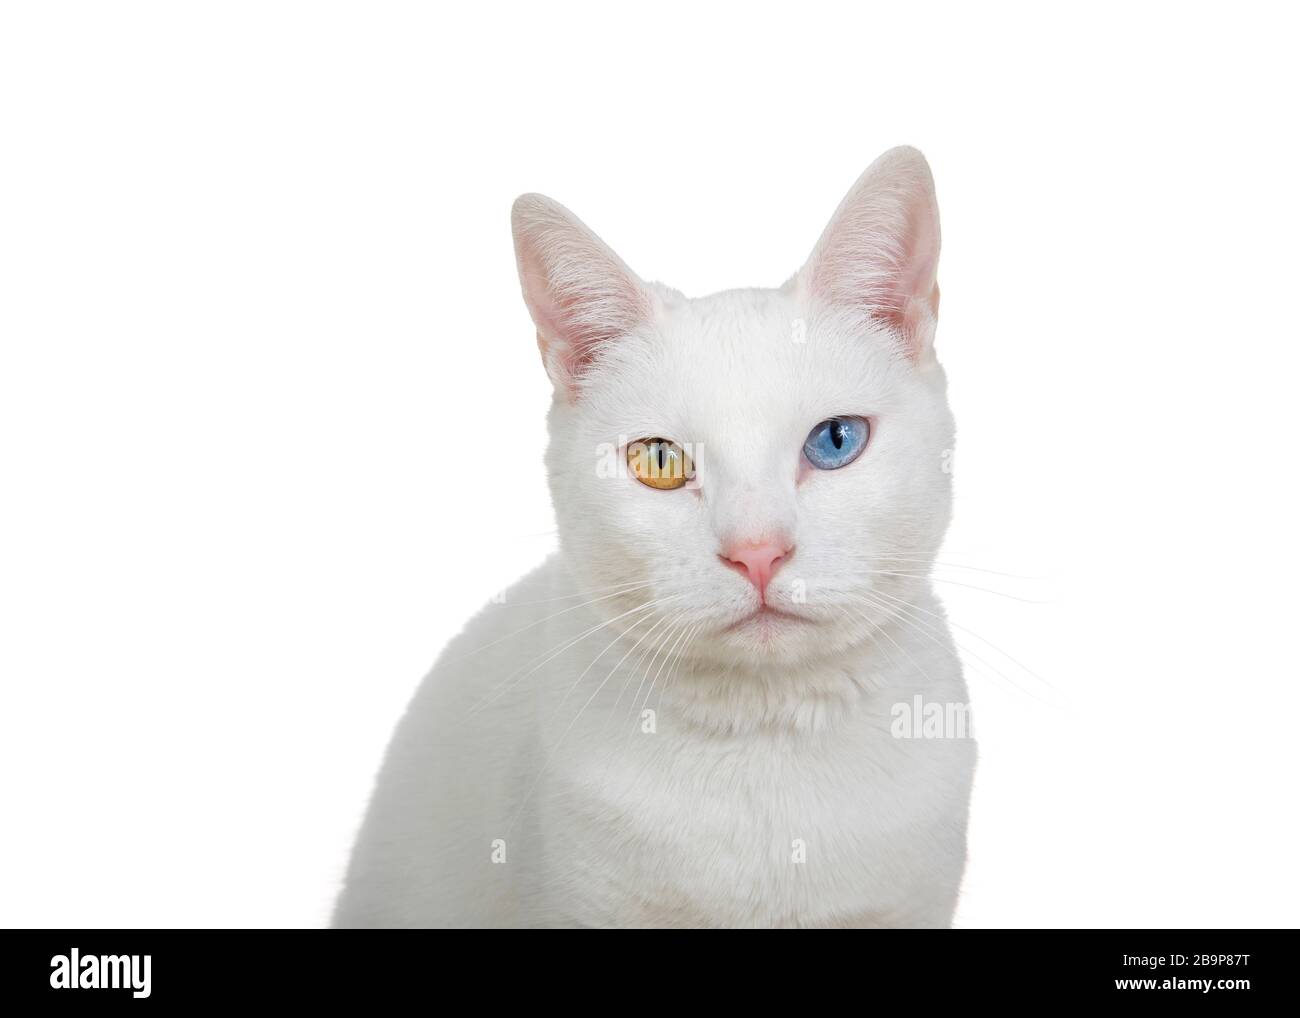 Gros plan portrait d'un chat blanc avec hétérochromie, yeux impairs, regardant directement le spectateur avec un stare intense. Isolé sur fond blanc. Banque D'Images